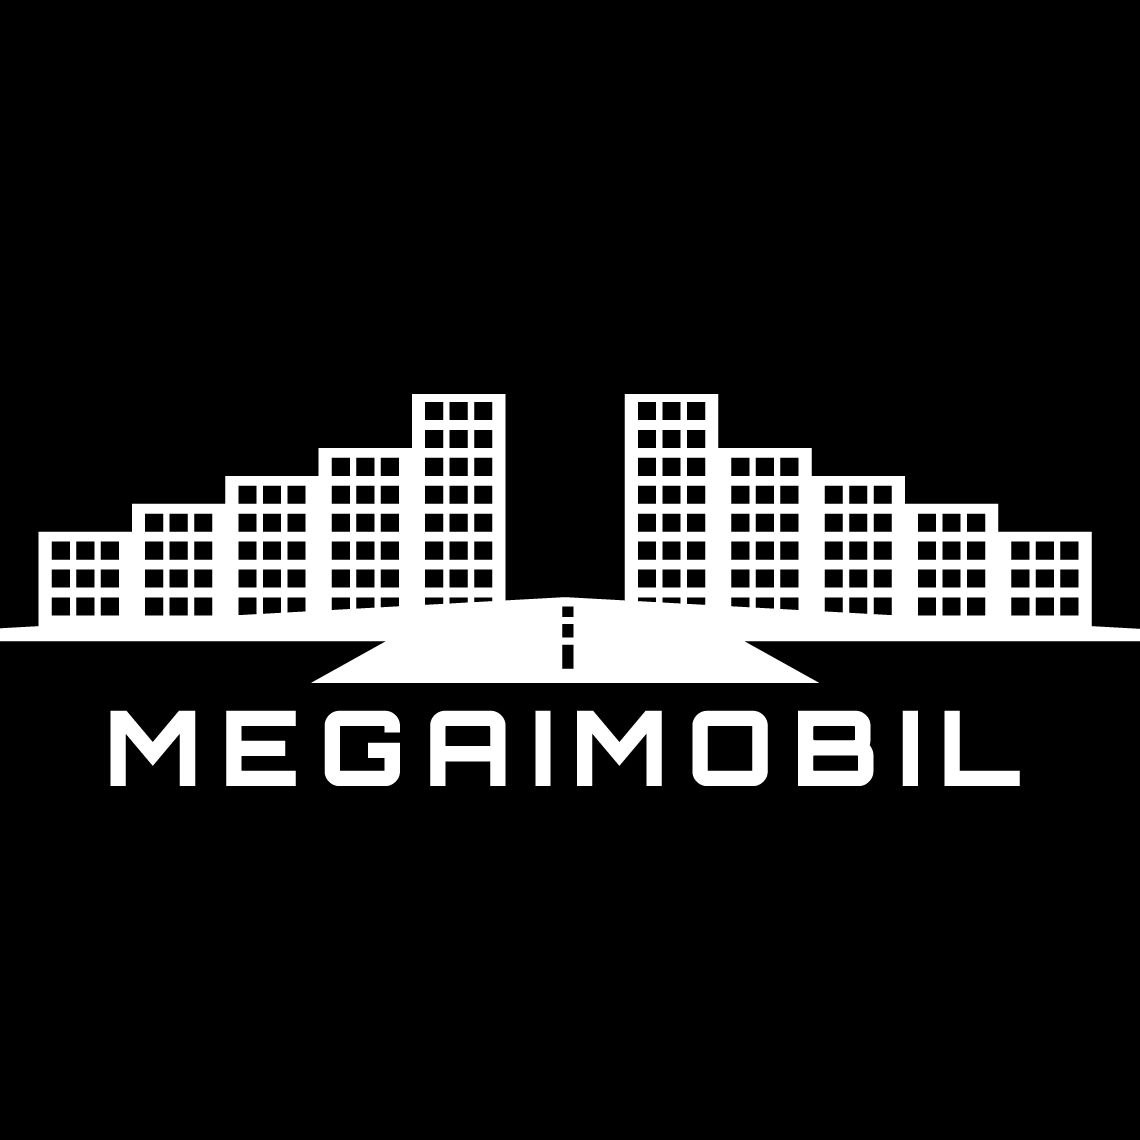 Megaimobil